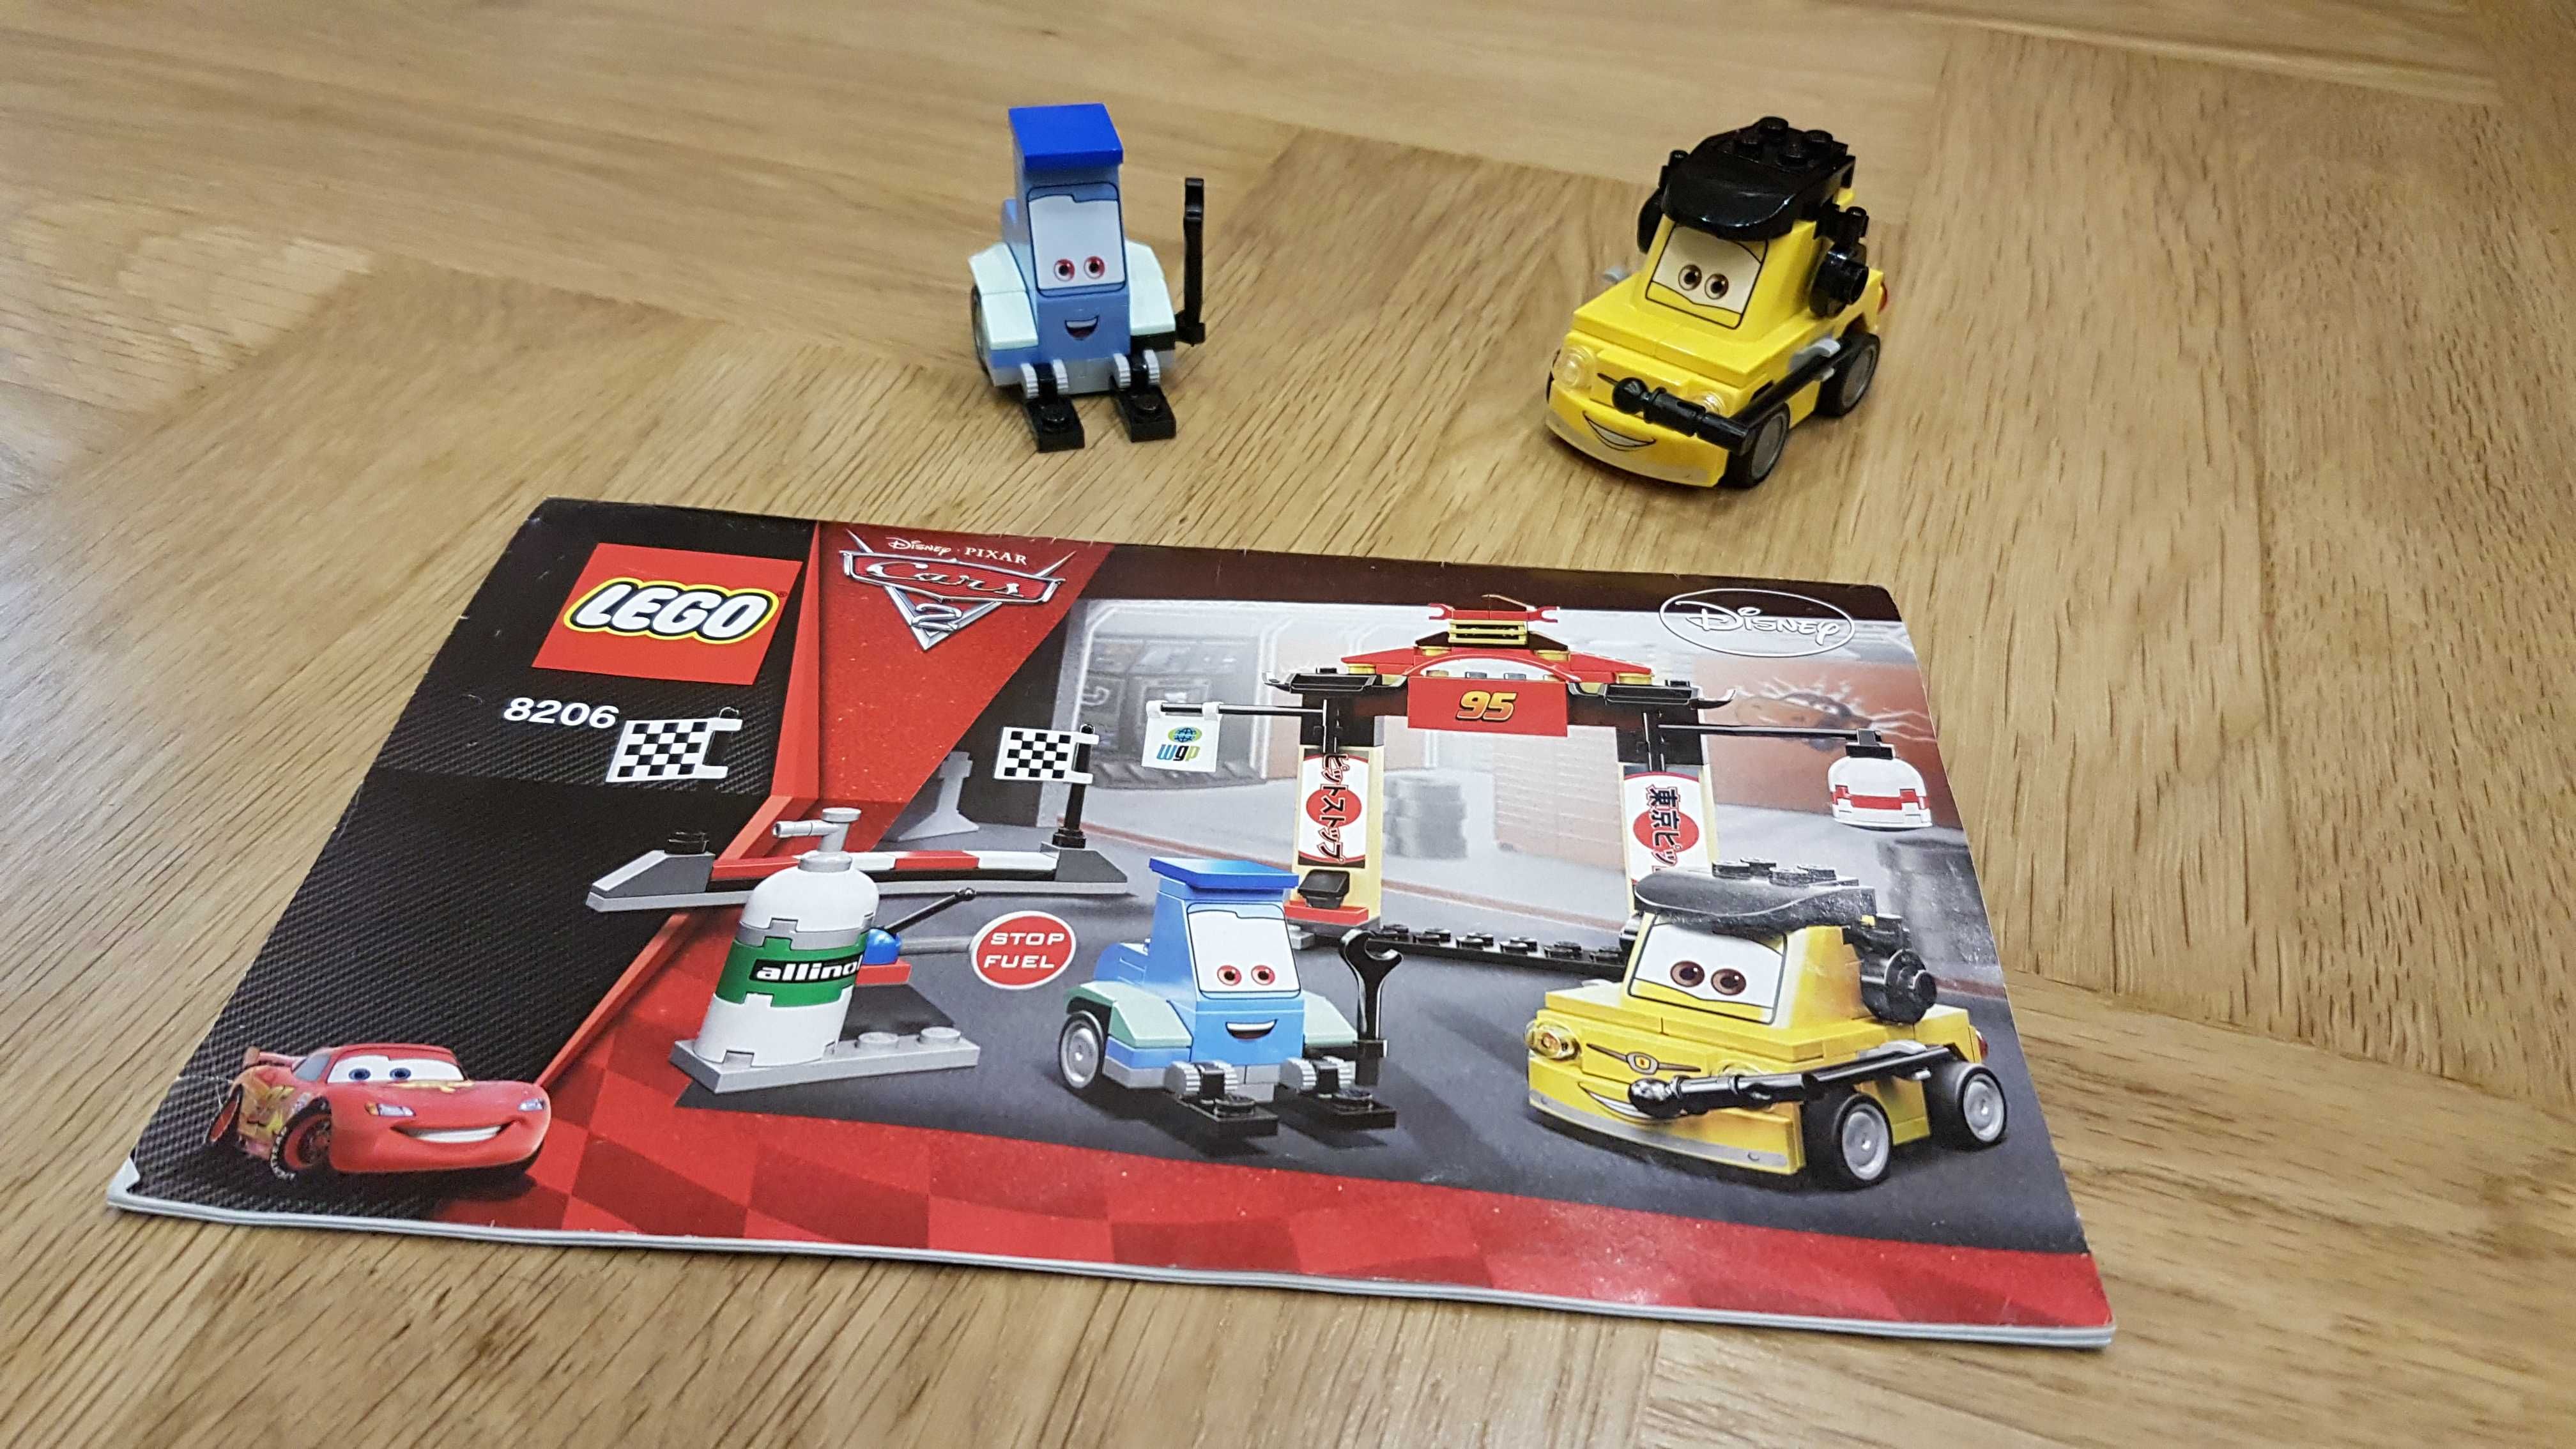 LEGO 8206 Auta - Stanowisko postojowe w Tokio